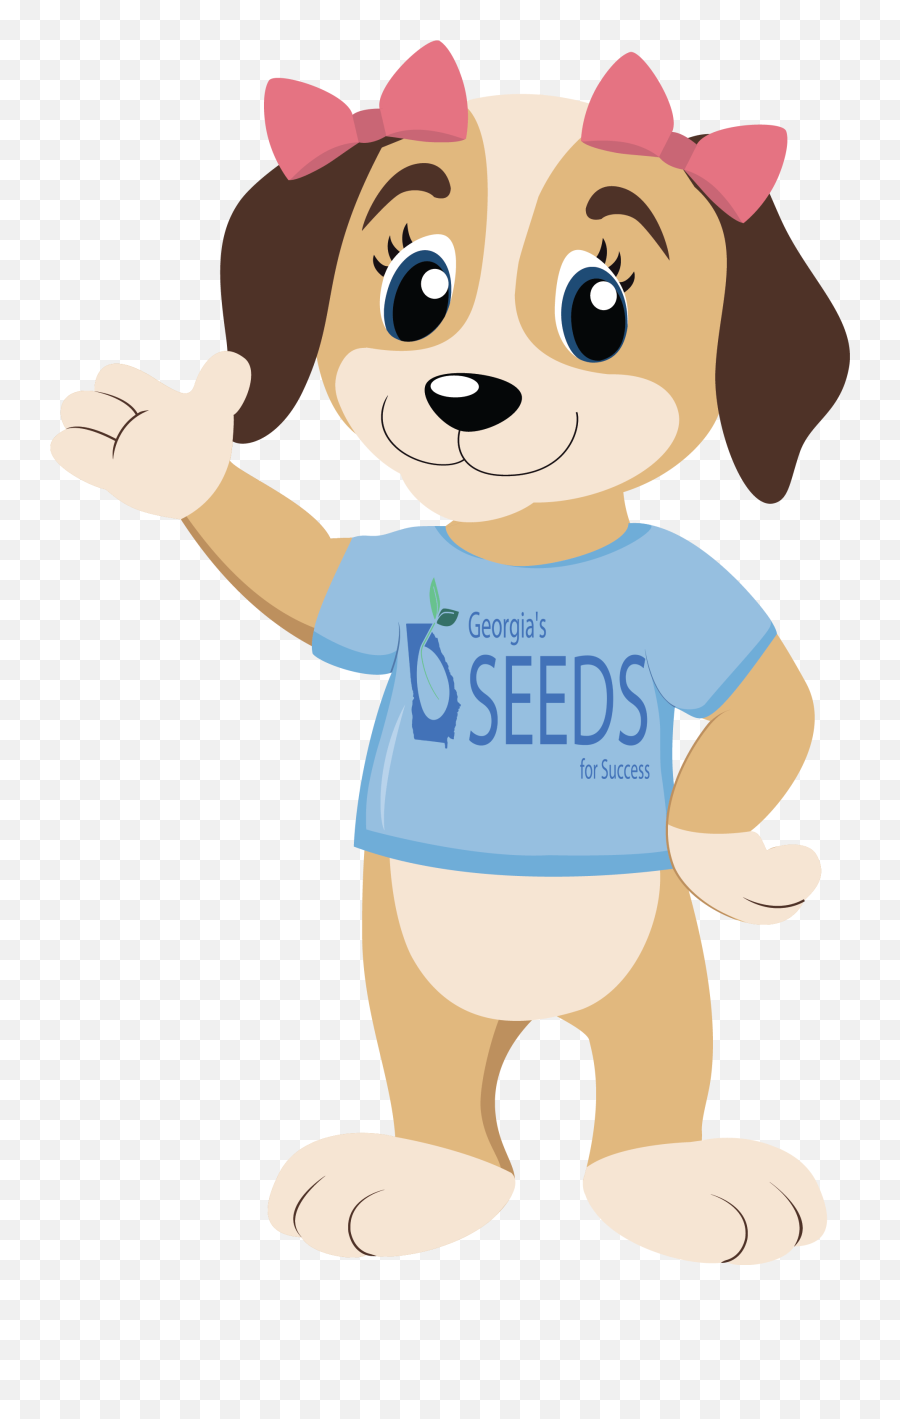 Georgia Seeds For Success - Clip Art Emoji,Social Emotions